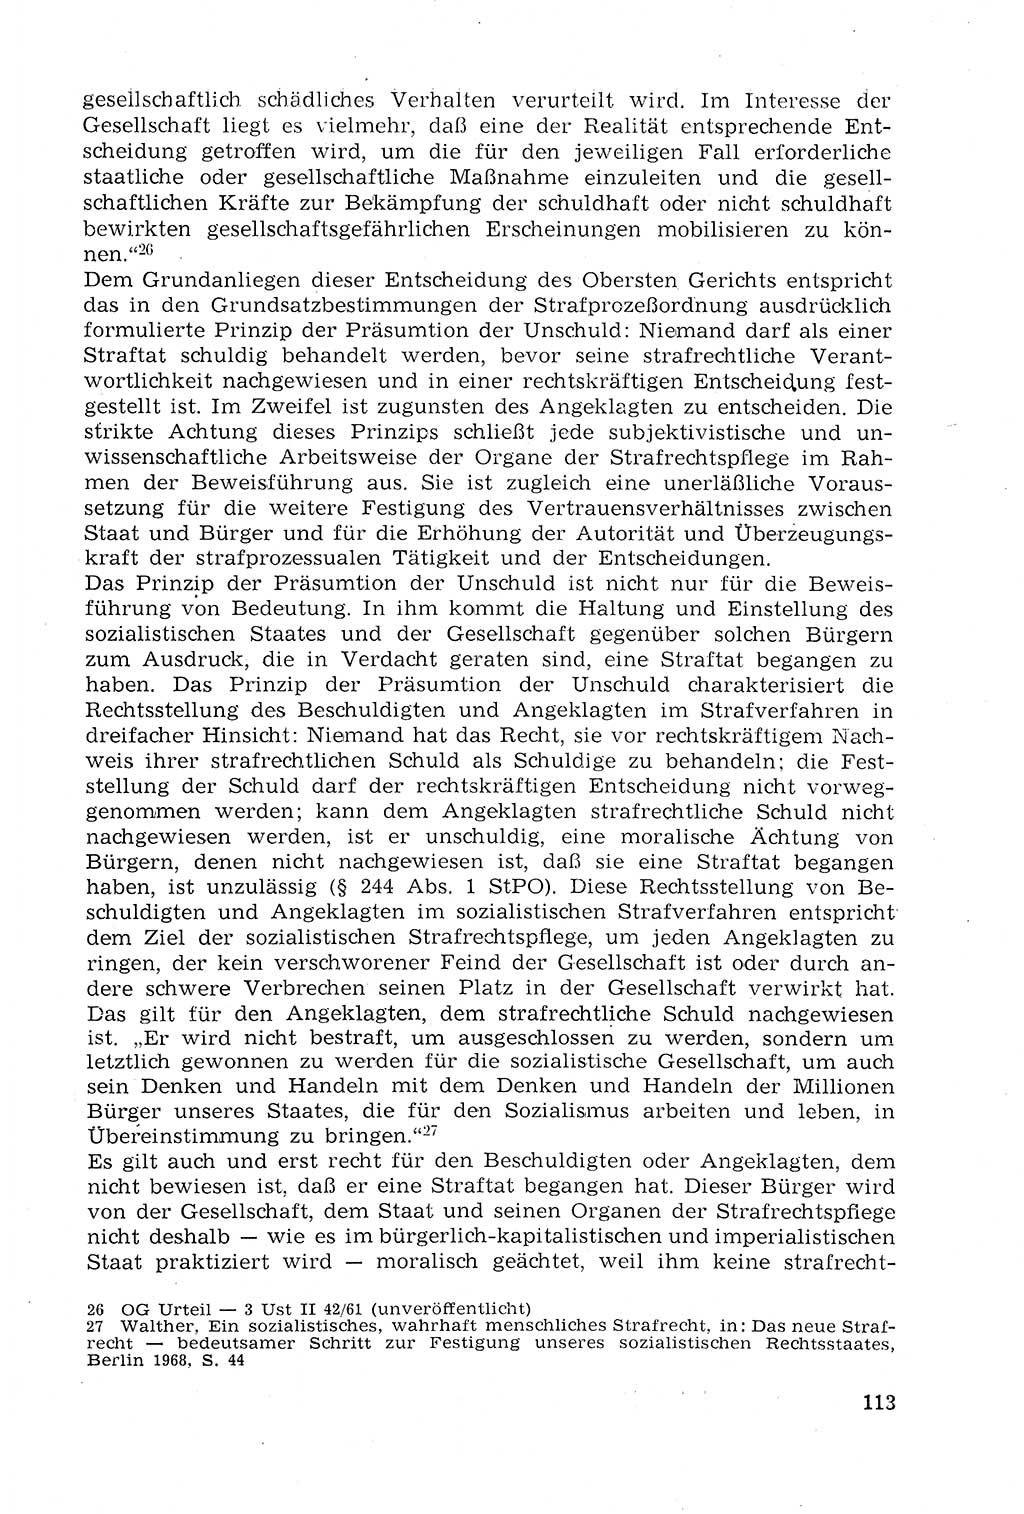 Strafprozeßrecht der DDR (Deutsche Demokratische Republik), Lehrmaterial 1969, Seite 113 (Strafprozeßr. DDR Lehrmat. 1969, S. 113)